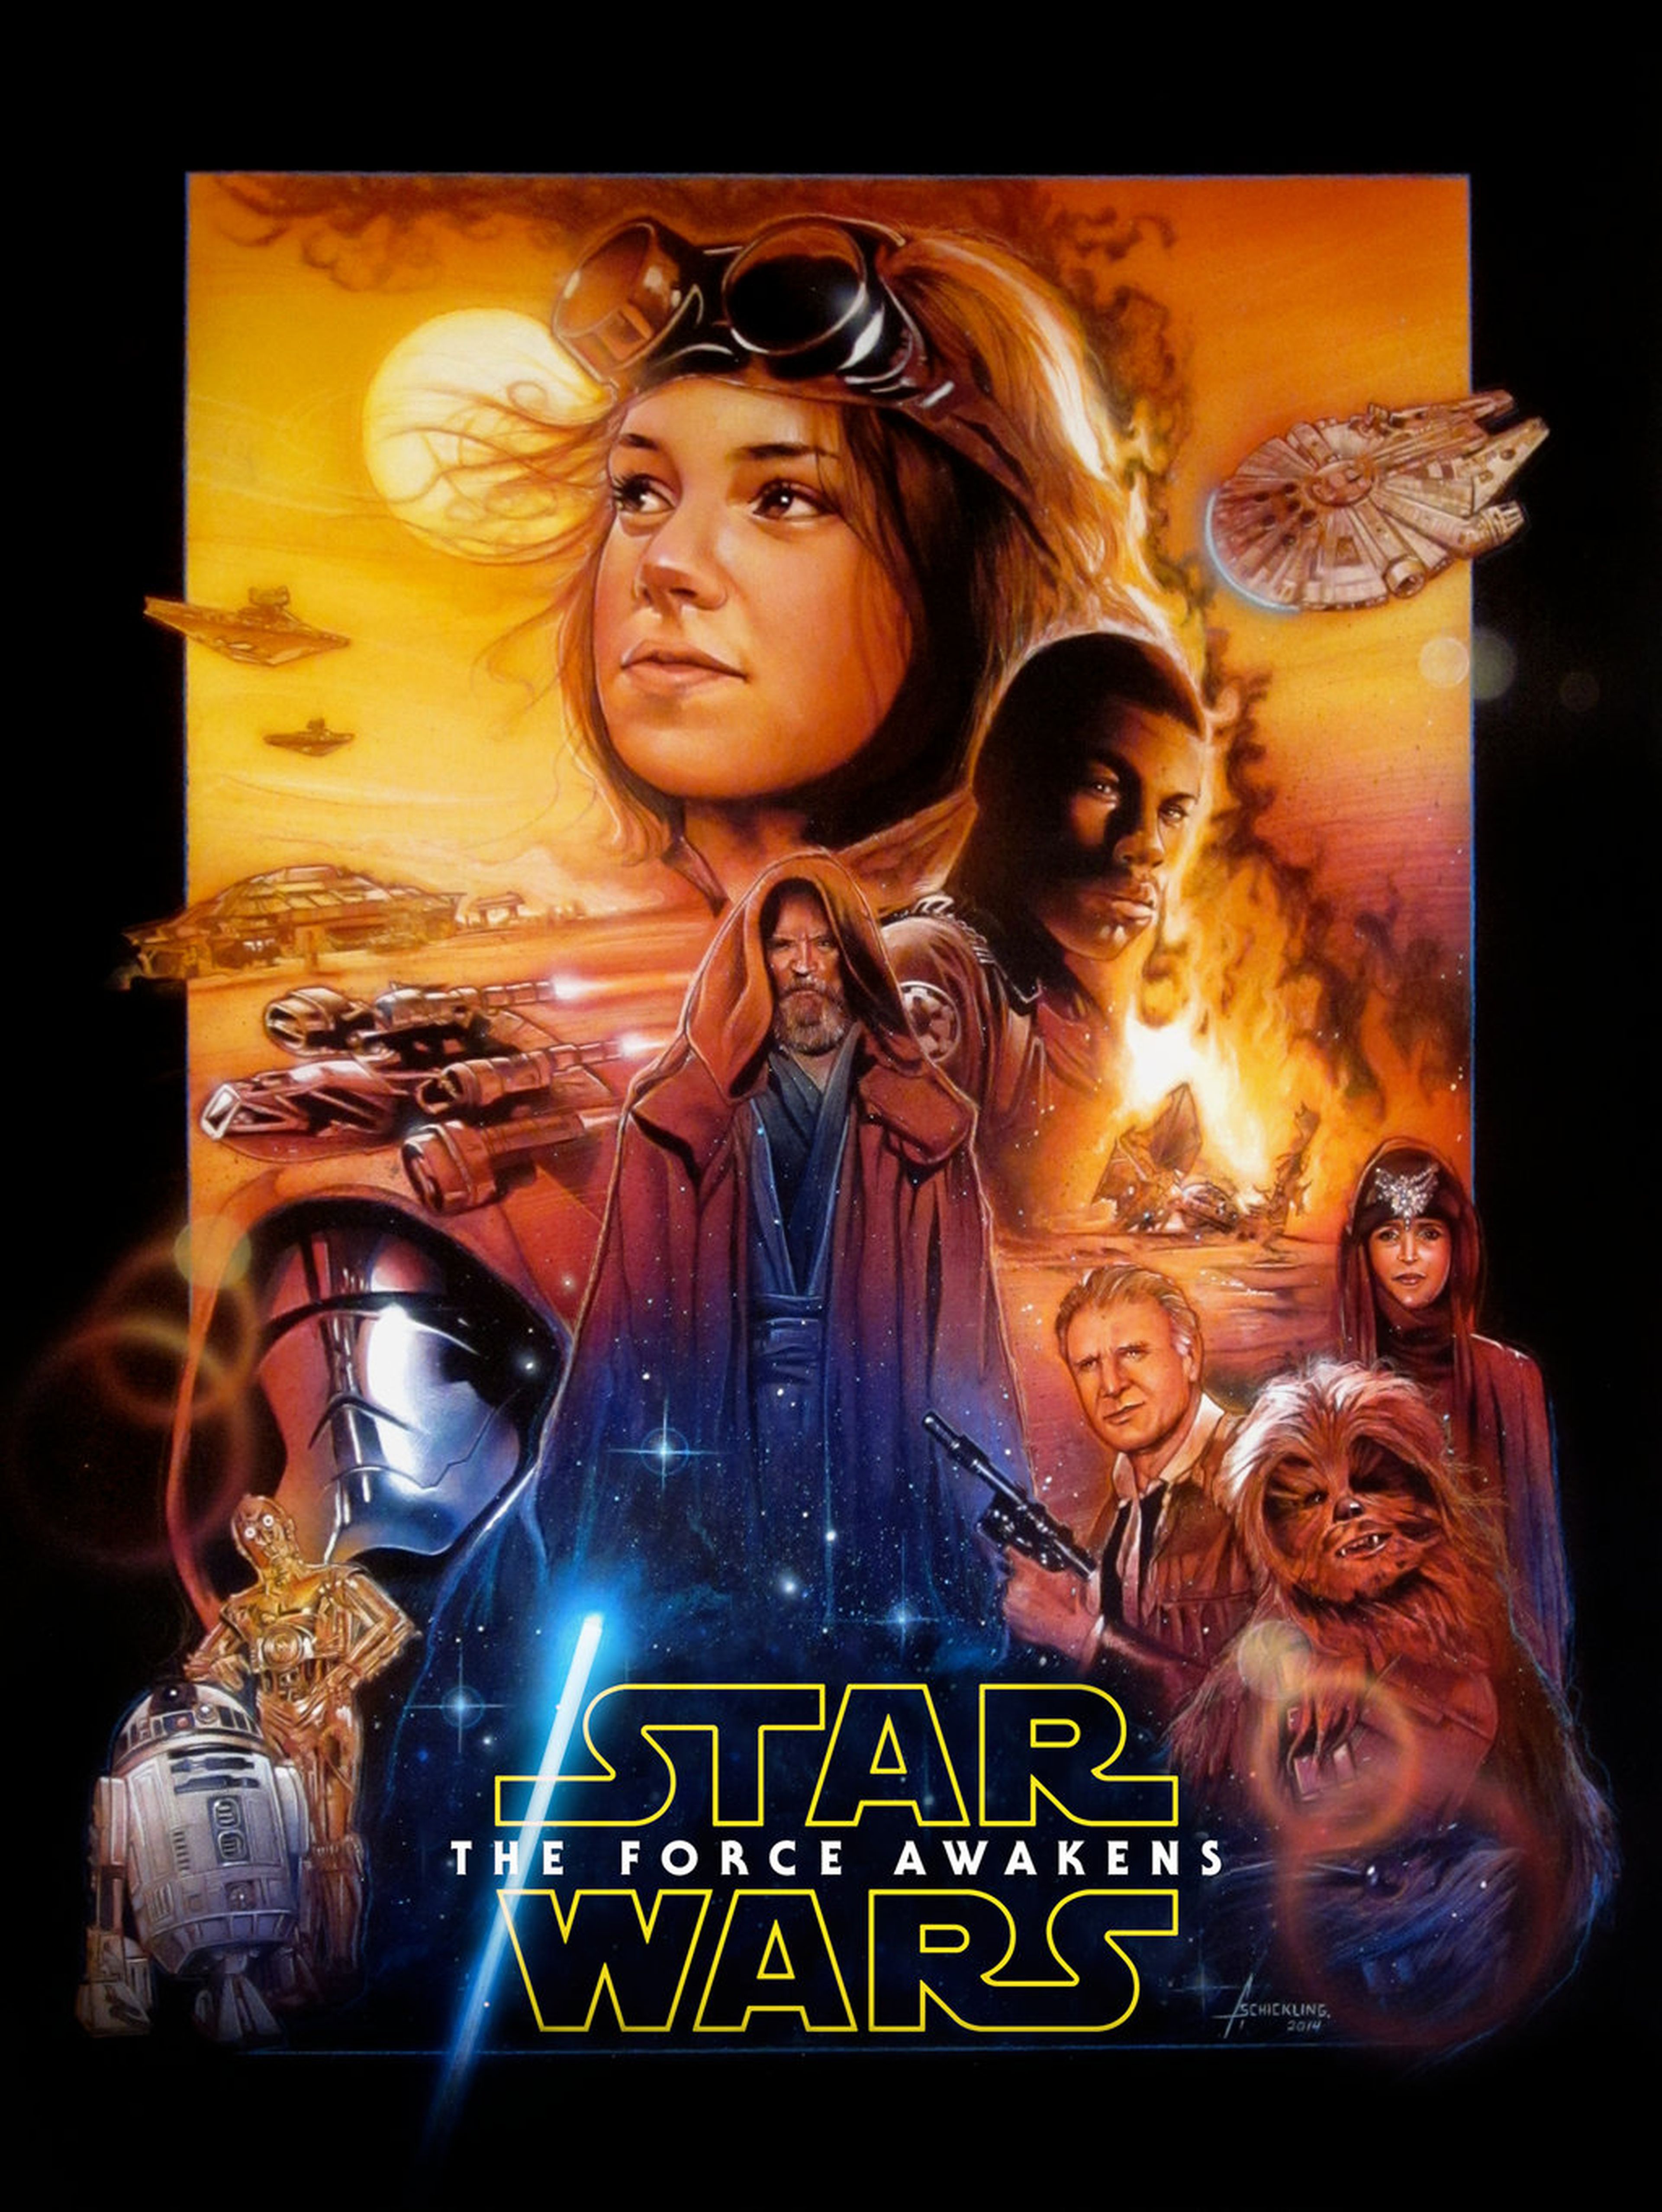 Star Wars Episodio VII El Despertar de la Fuerza: Drew Struzan podría dibujar el póster